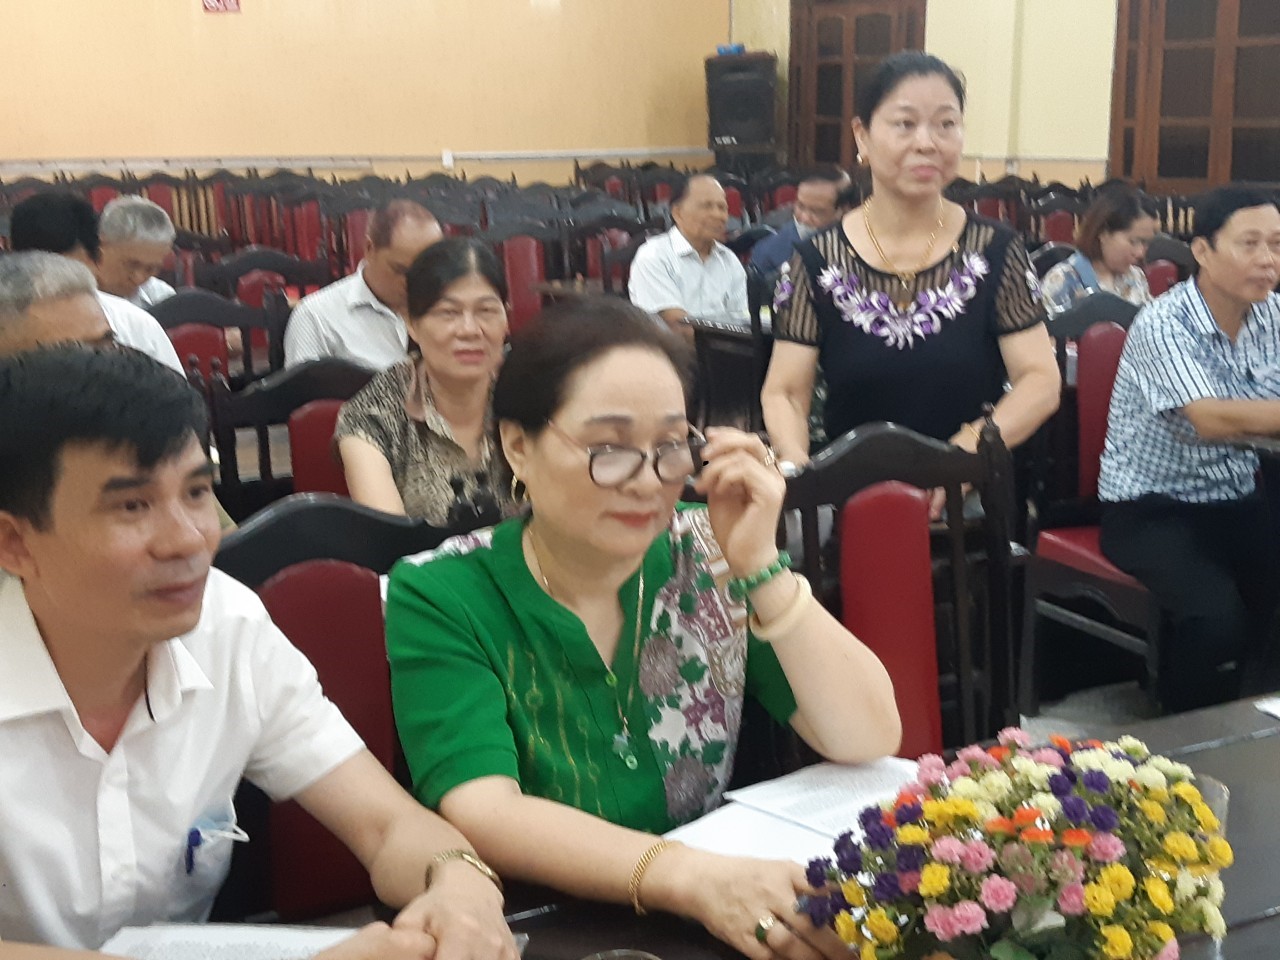 Hội khuyến học thành phố Thái Bình tổ chức hội nghị sơ kết 6 tháng đầu năm phương hướng nhiệm vụ chủ yếu 6 tháng cuối năm 2022